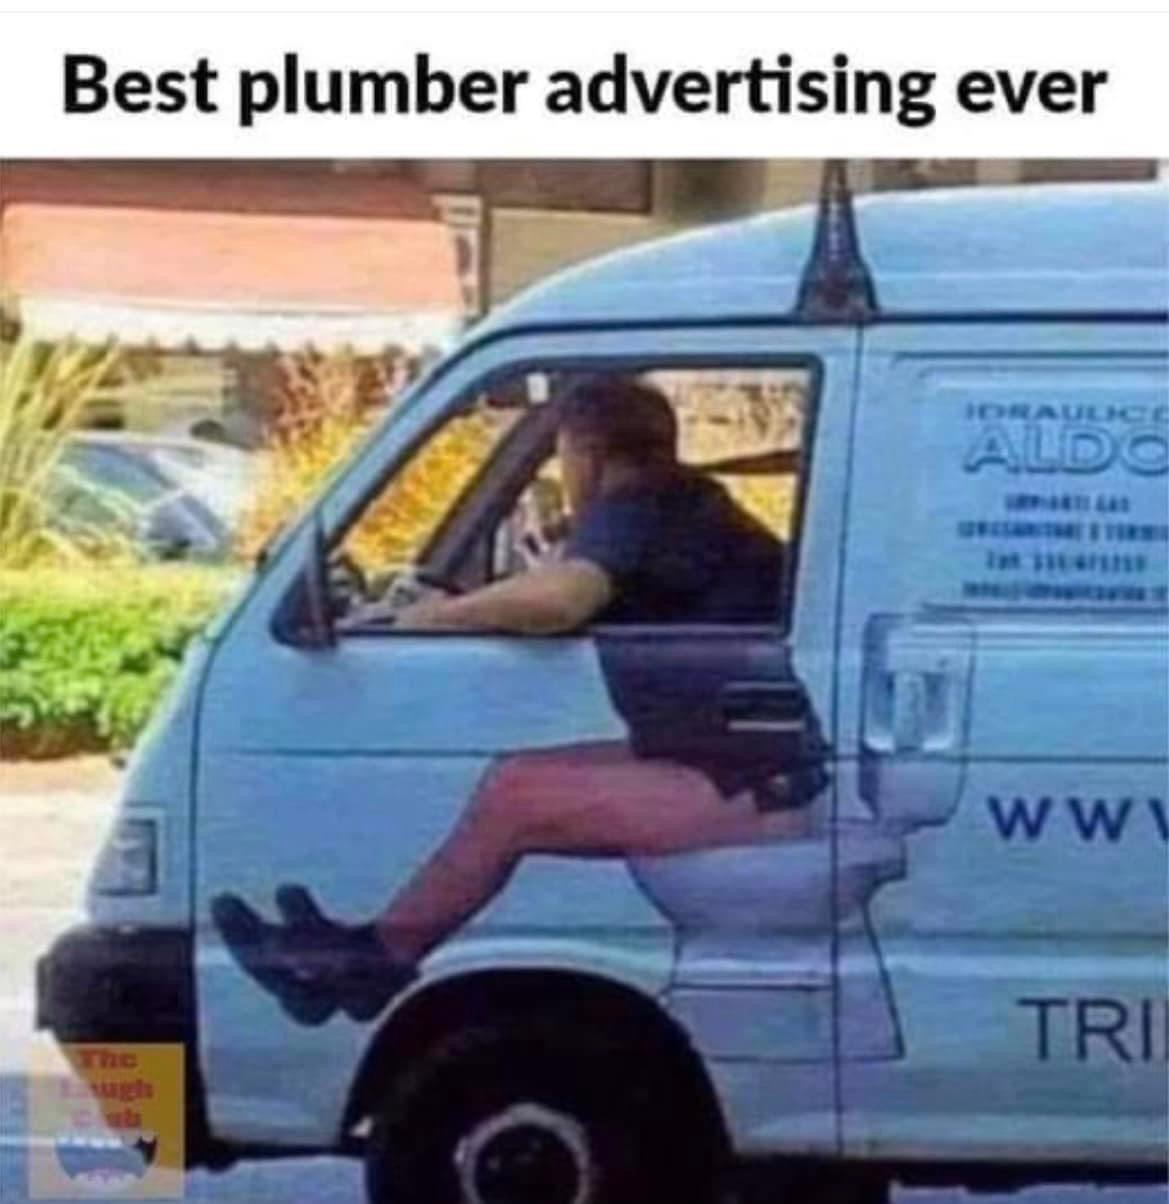 Best plumber advertising ever